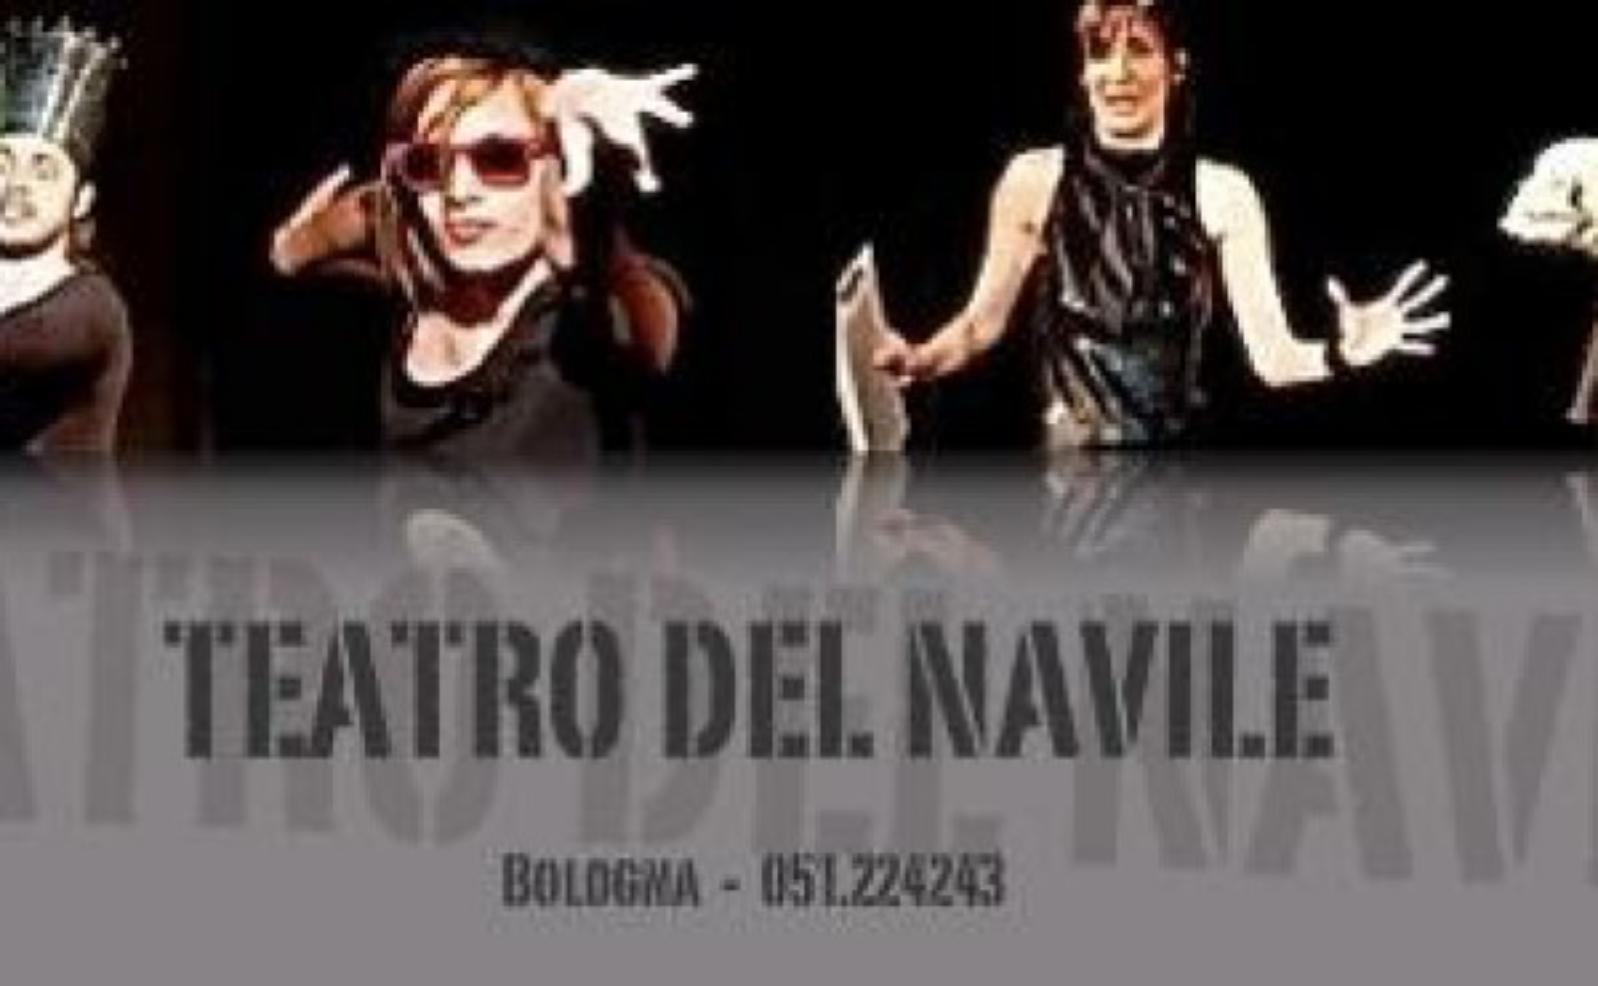 Teatro del Navile